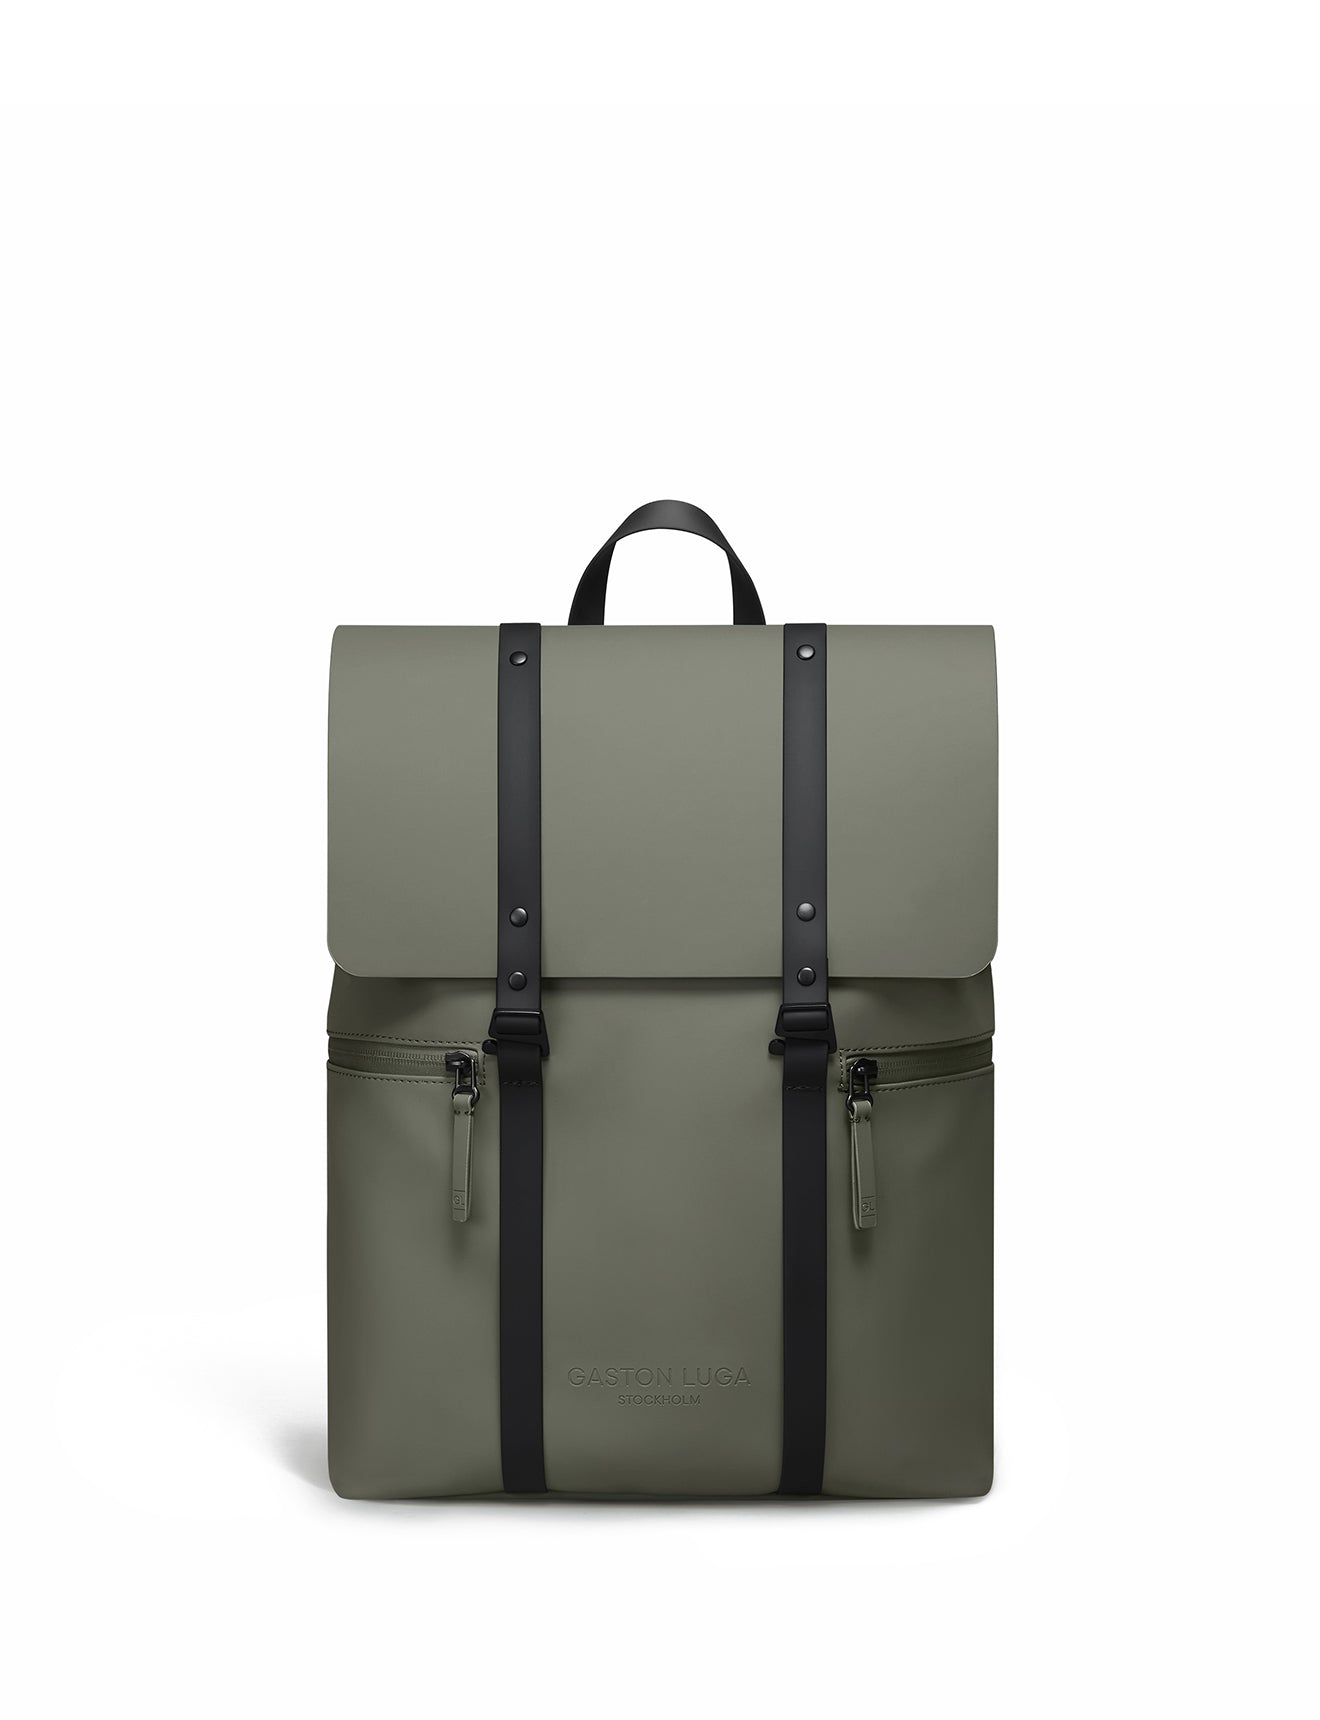 Gaston Luga - Splash 2.0 13" Backpack 14.25L - Olive